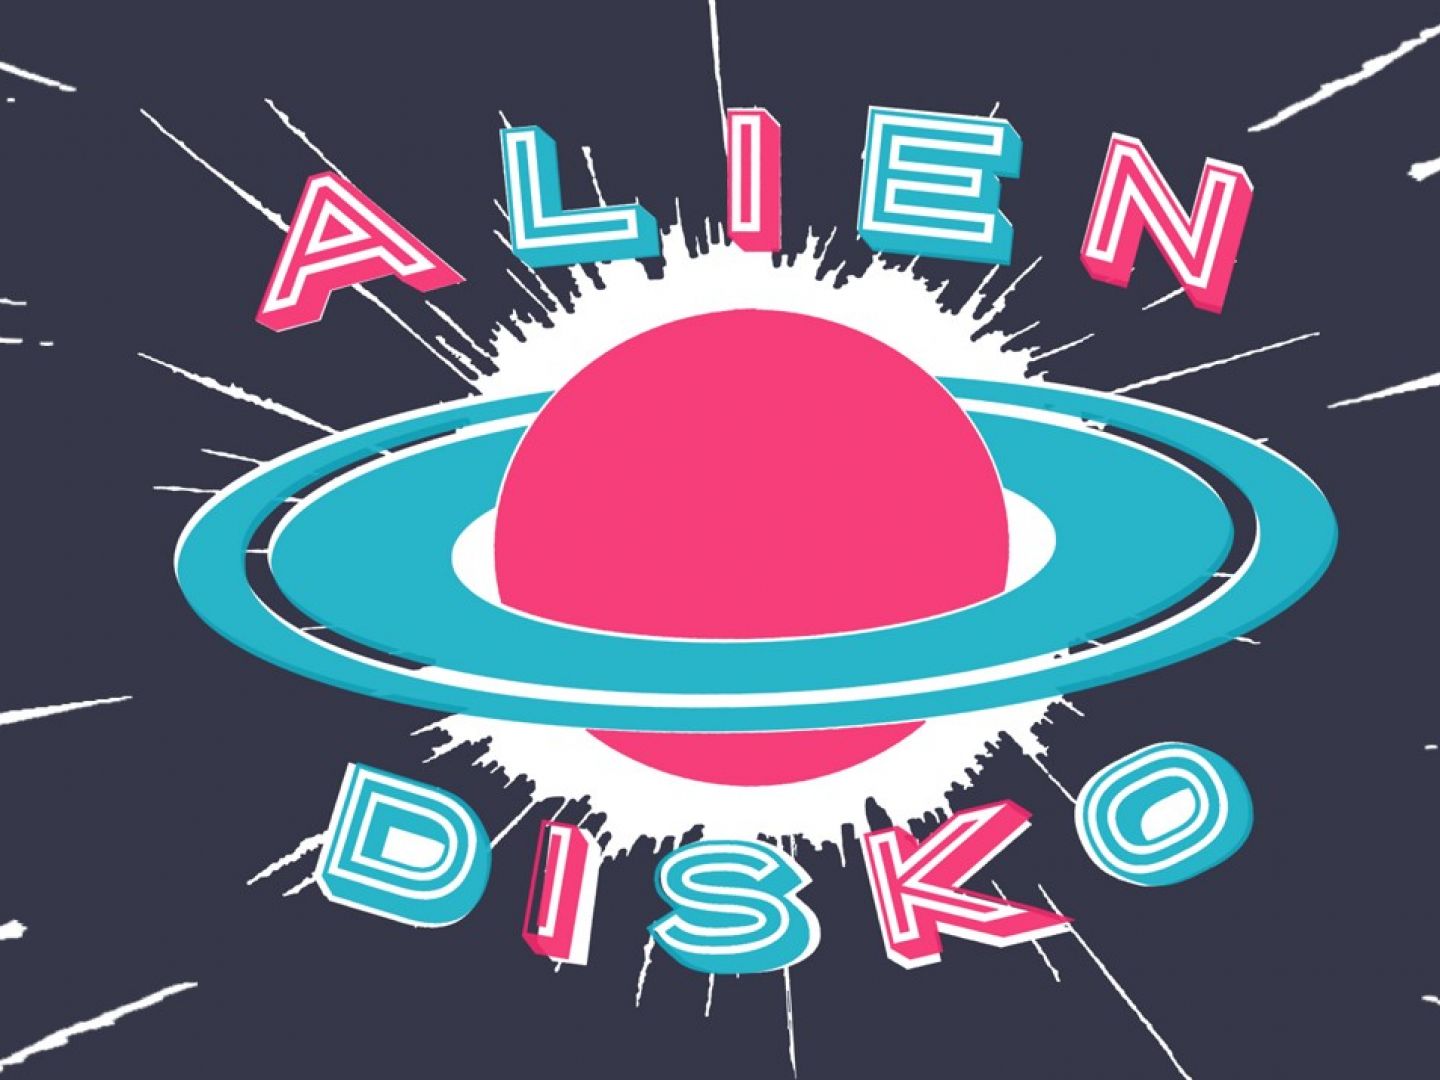 Das Motiv der Alien Disko